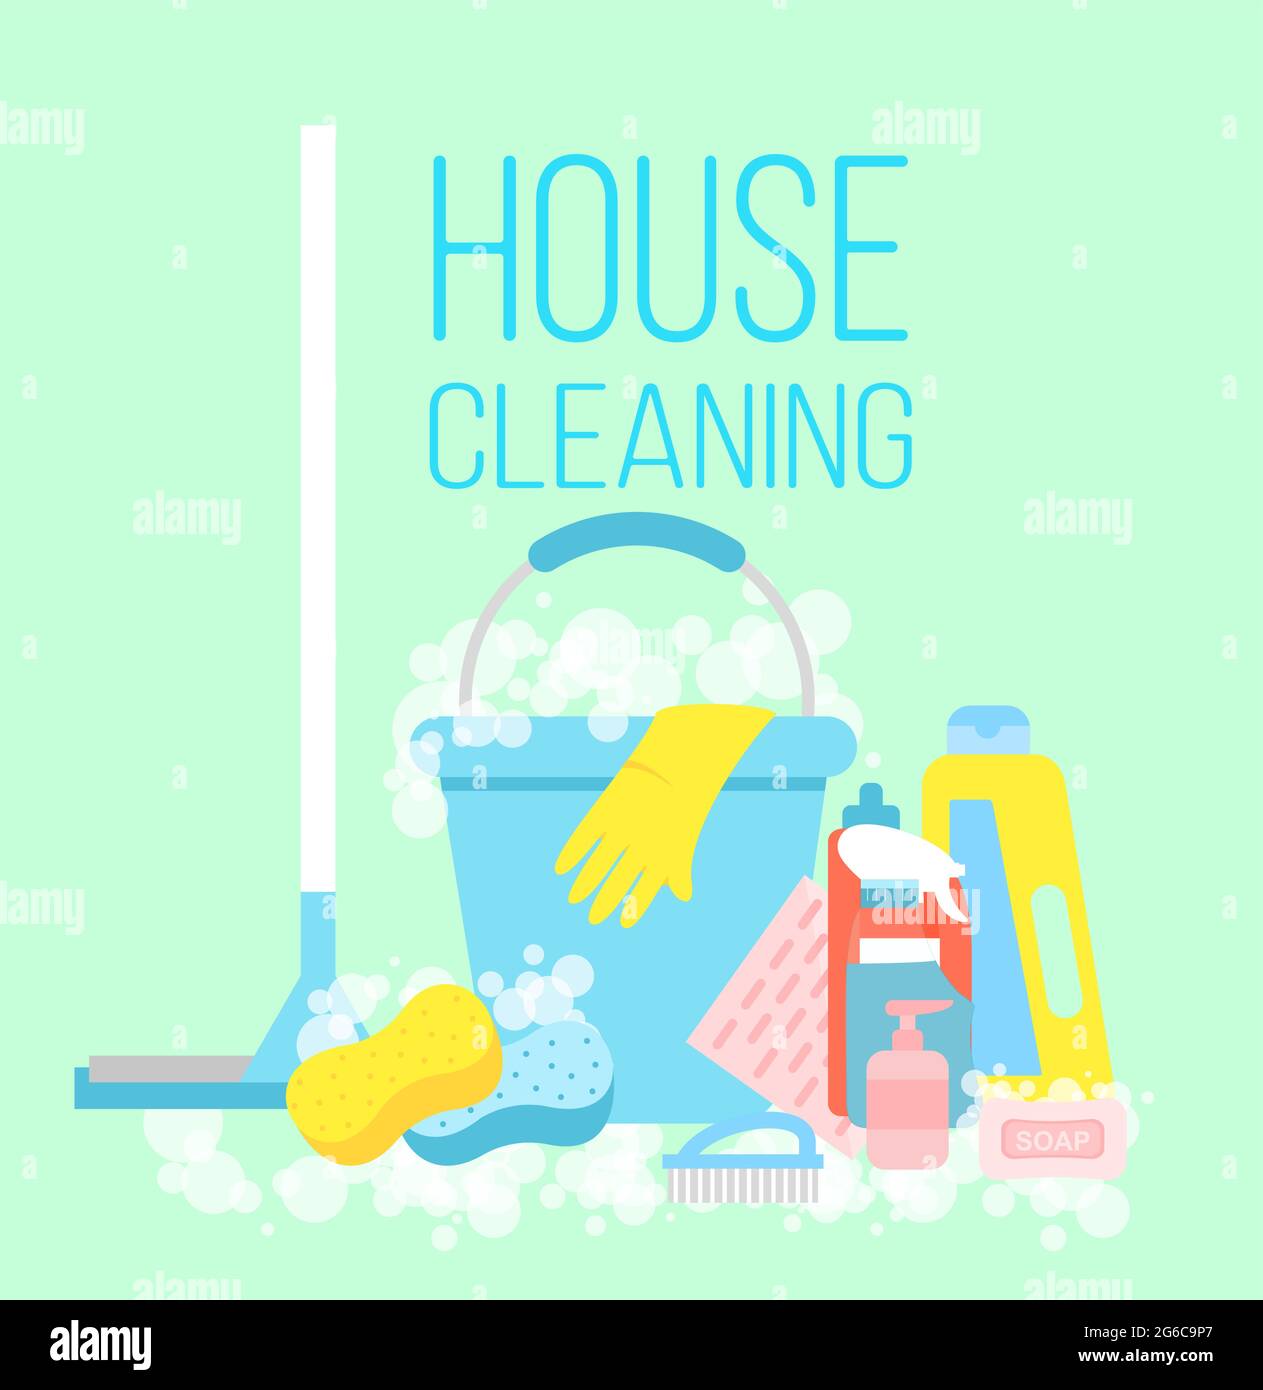 Illustration vectorielle du concept de nettoyage de la maison, de service de nettoyage. Des gants, une vadrouille, sont des moyens de nettoyage en tant que grattoir, brosse et seau bleu clair Illustration de Vecteur